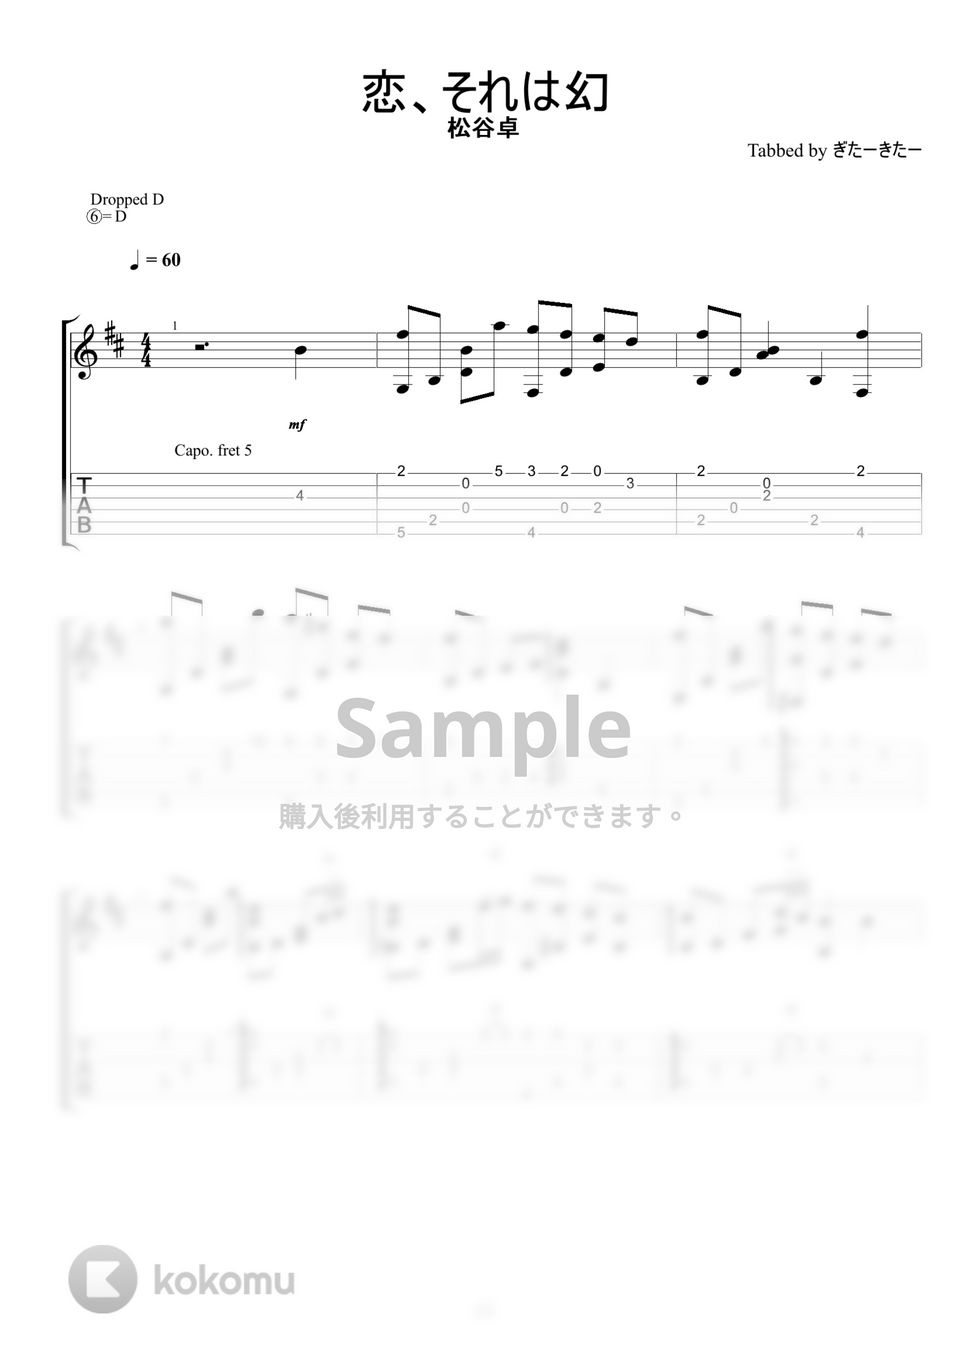 のだめカンタービレ - 恋、それは幻 (ソロギターアレンジ) by ぎたーきたー